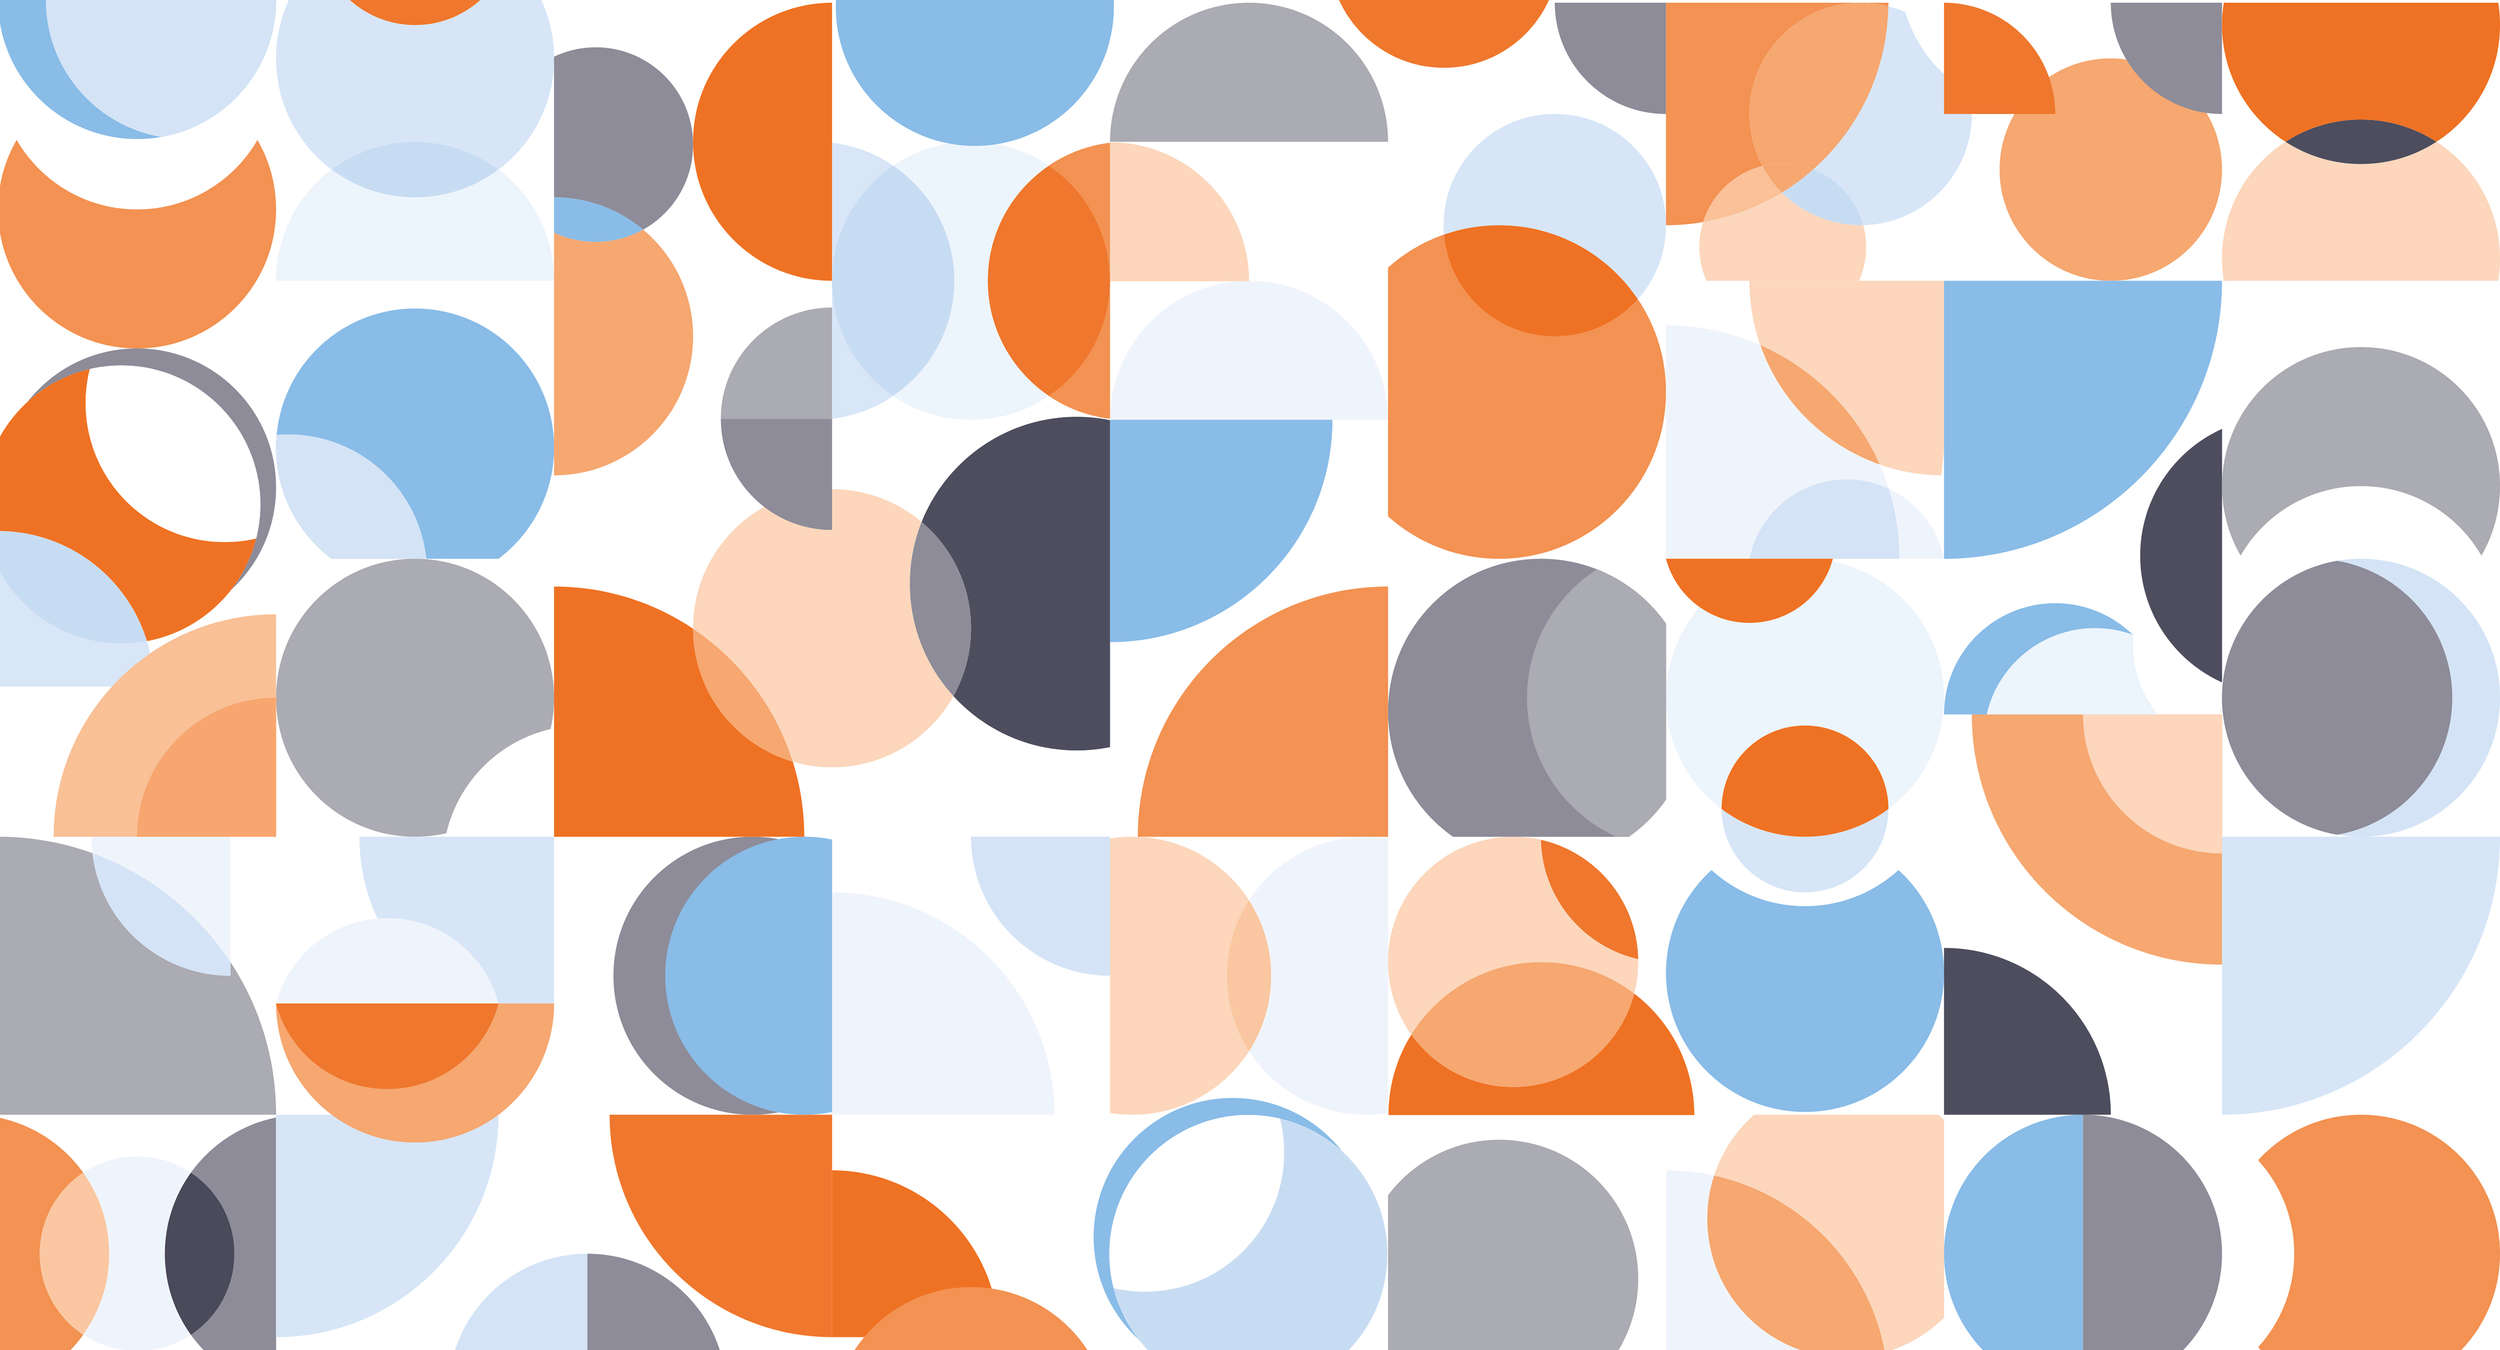             Papier peint rétro, motif graphique & couleurs vives - bleu, orange, blanc
        